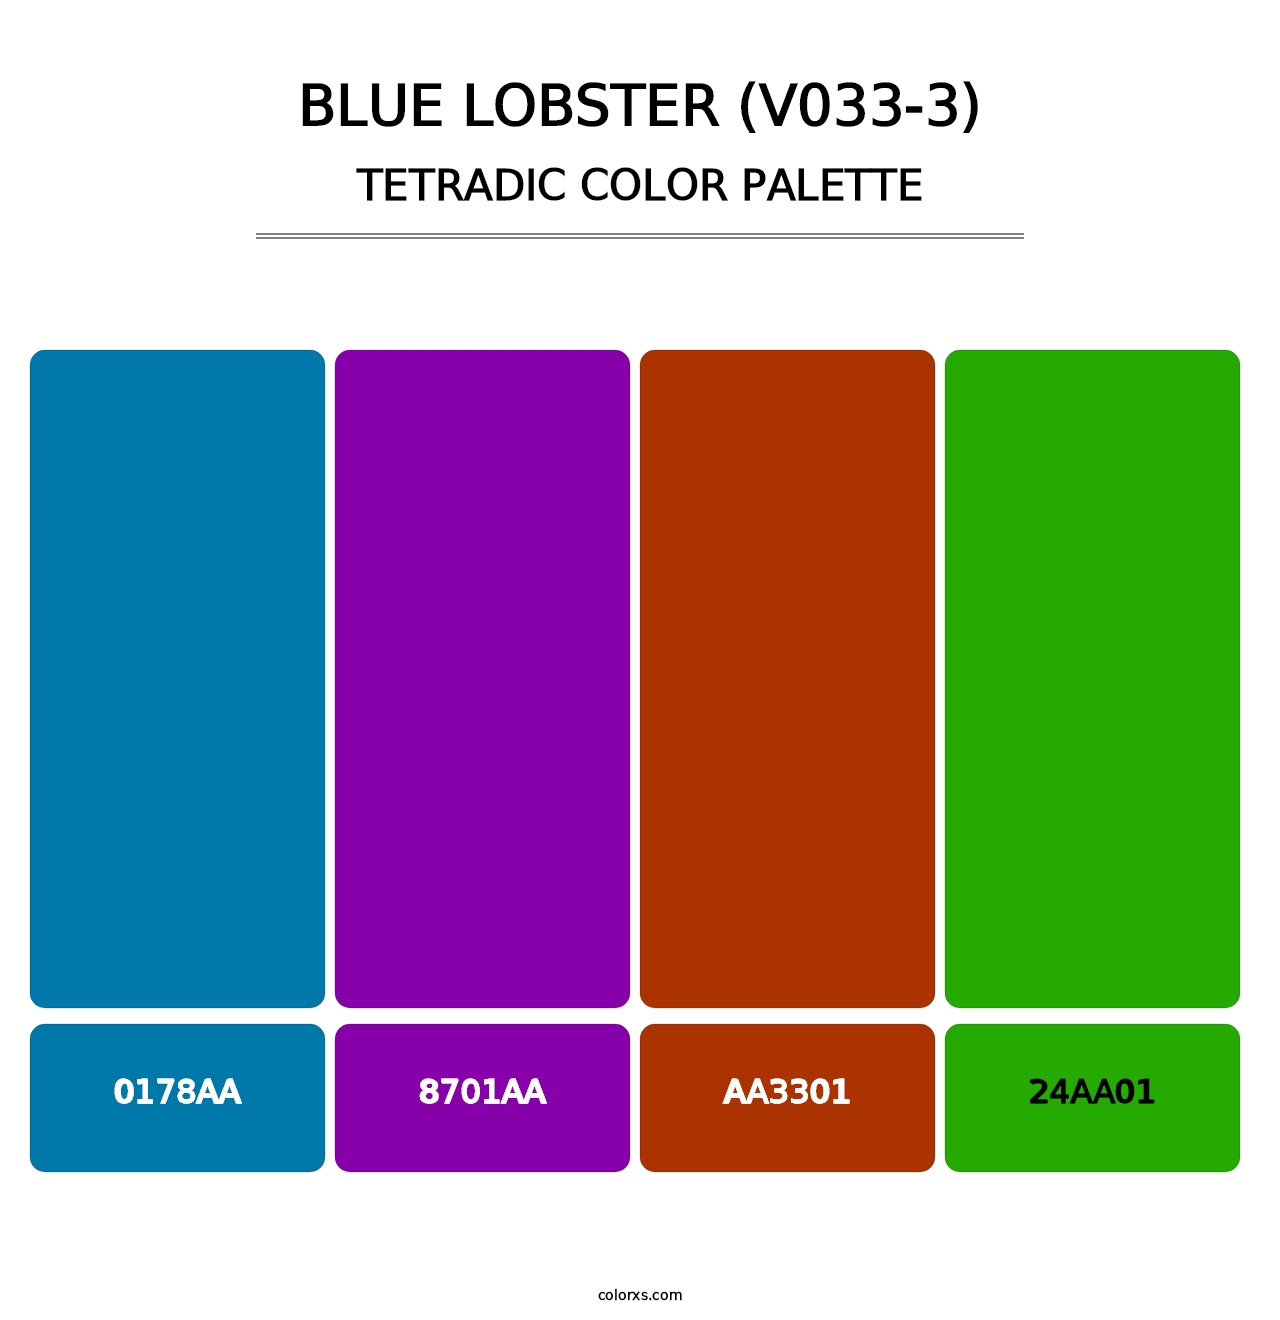 Blue Lobster (V033-3) - Tetradic Color Palette